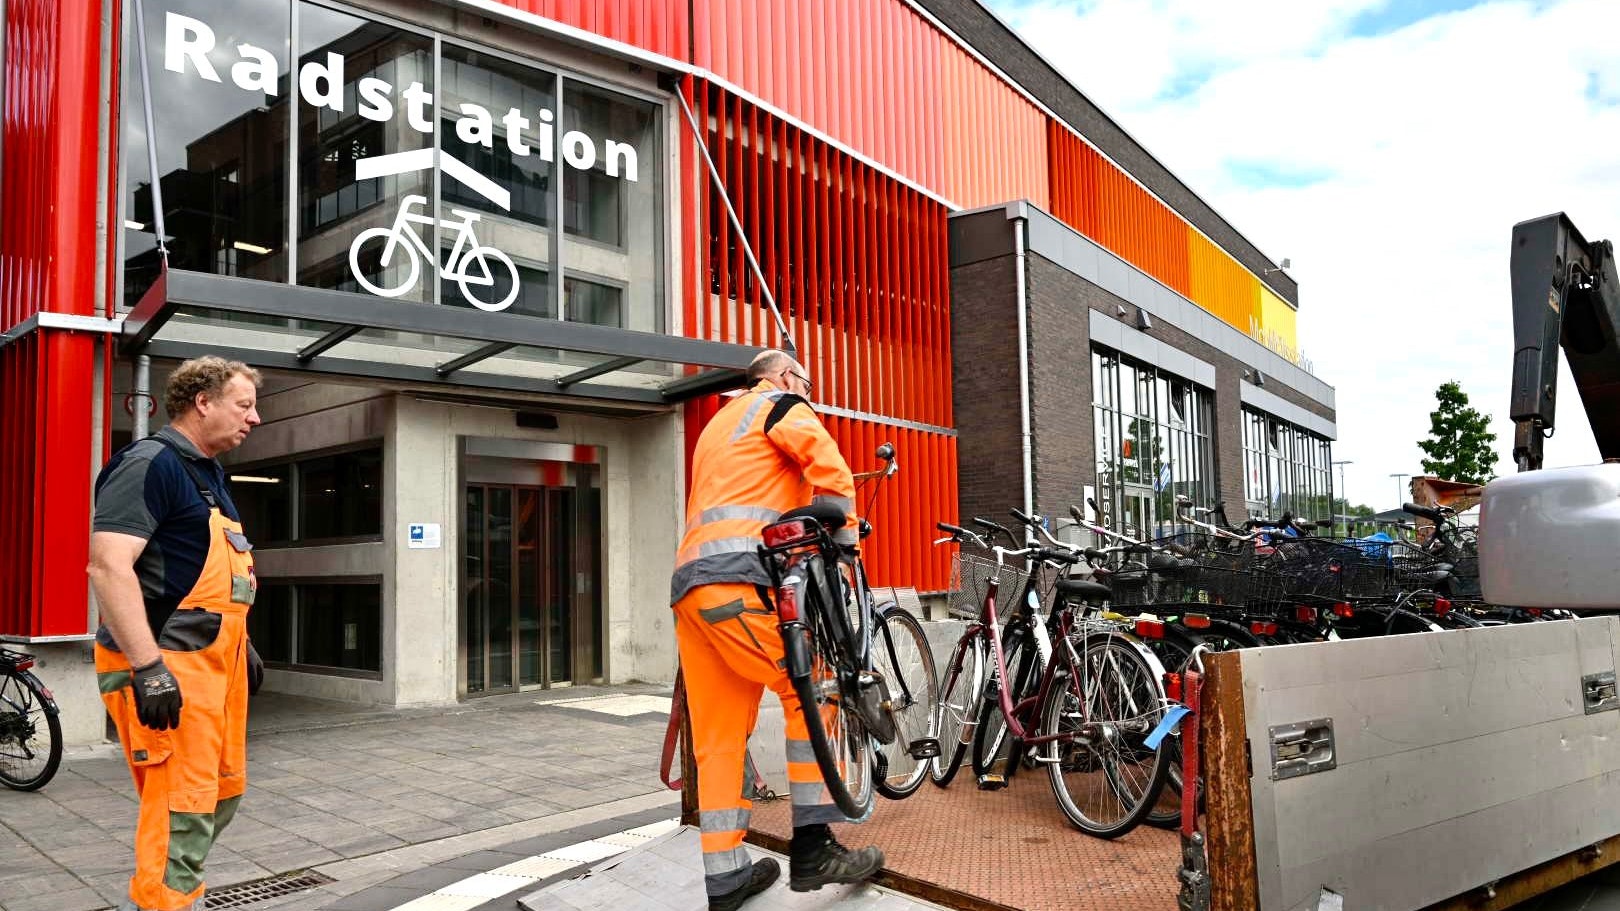 Die Mitarbeiter des Bauhofs haben gut zu tun: Am Mittwoch beseitigten sie über 40 Fahrräder im Umfeld der Mobilitätsstation. Foto: M. Niehues